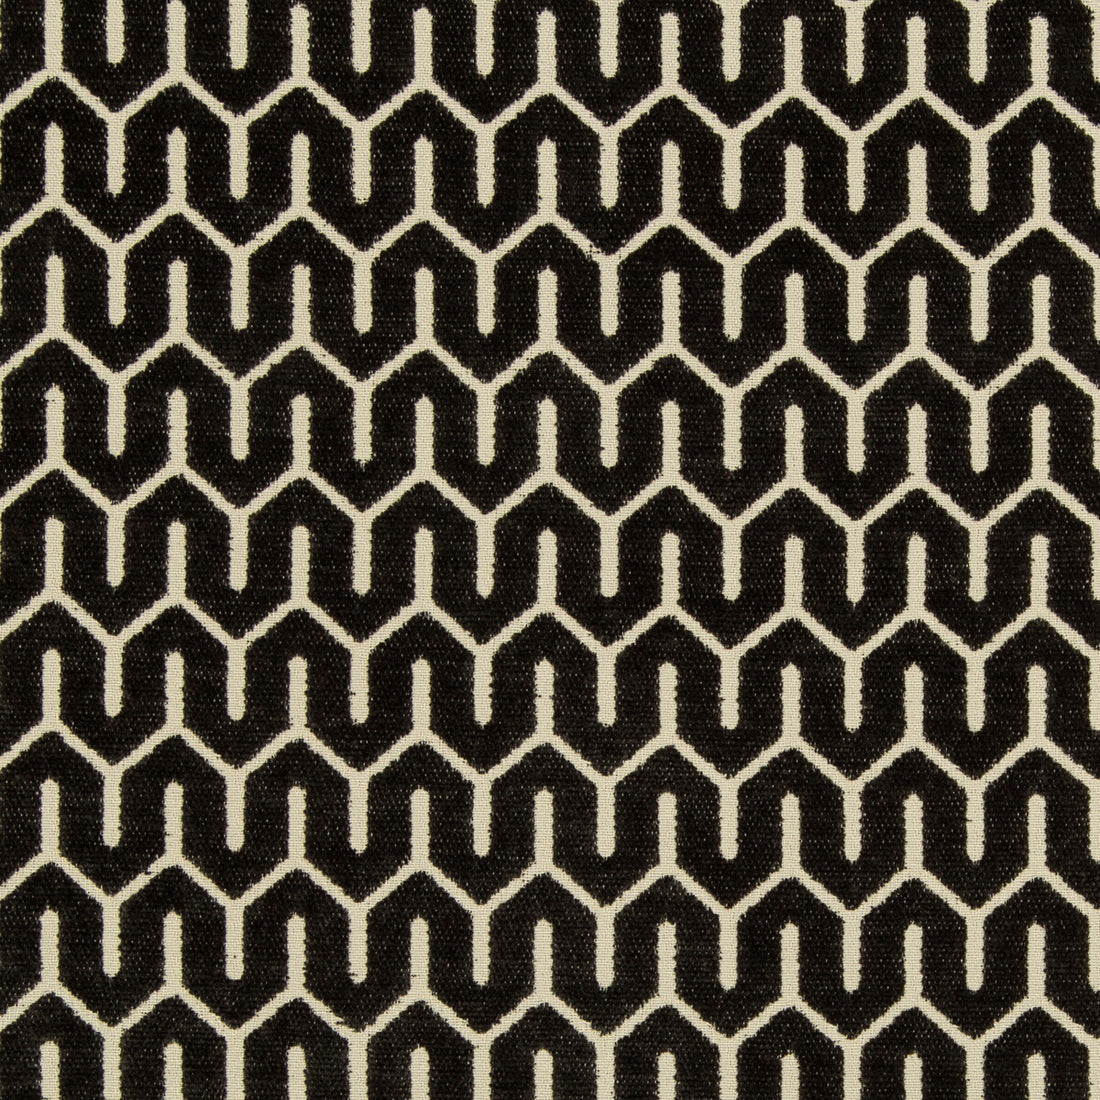 Kravet Design fabric in 35706-8 color - pattern 35706.8.0 - by Kravet Design